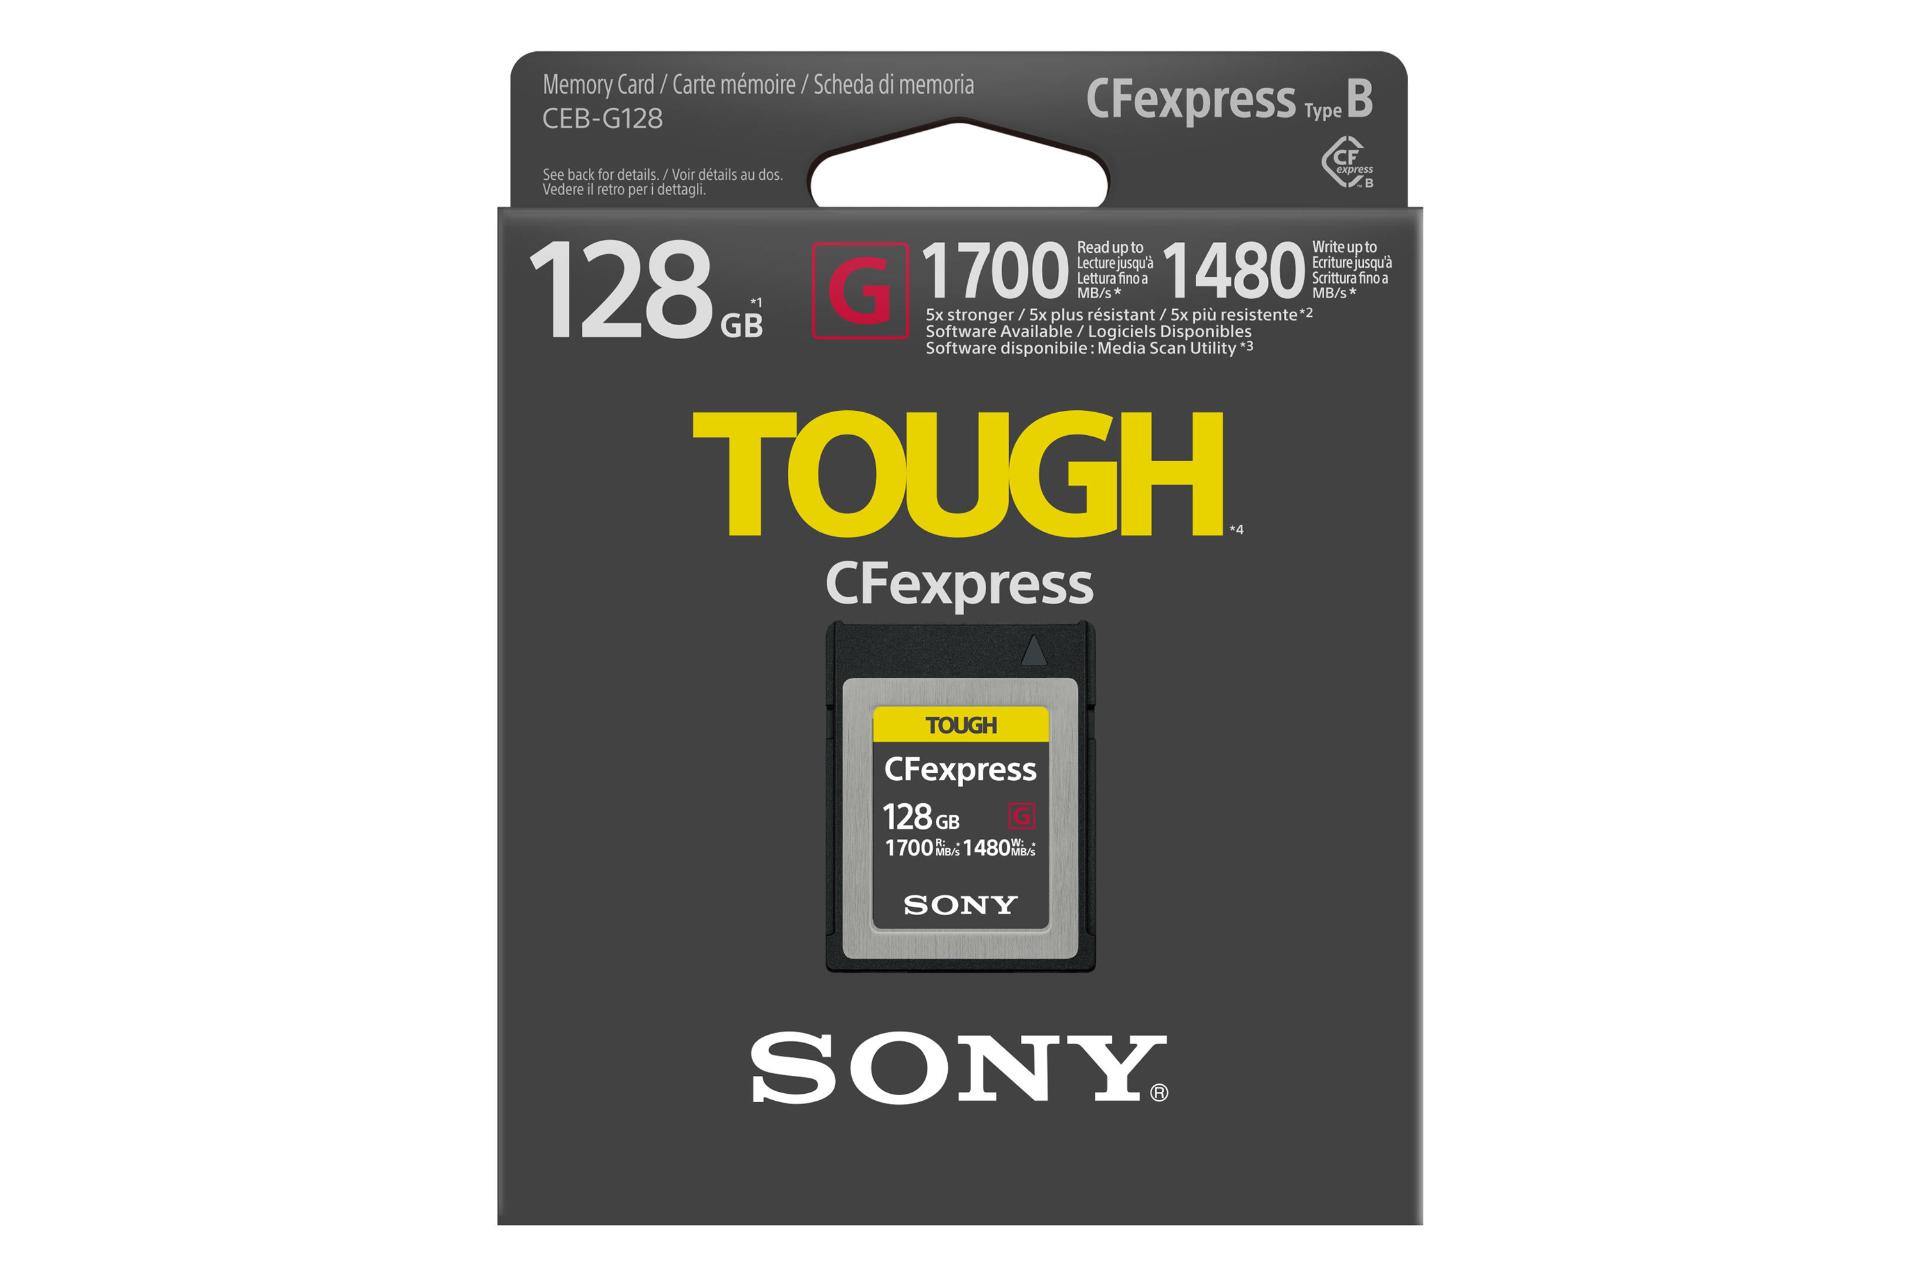 جعبه کارت حافظه سونی CFexpress با ظرفیت 128 گیگابایت مدل Type B TOUGH